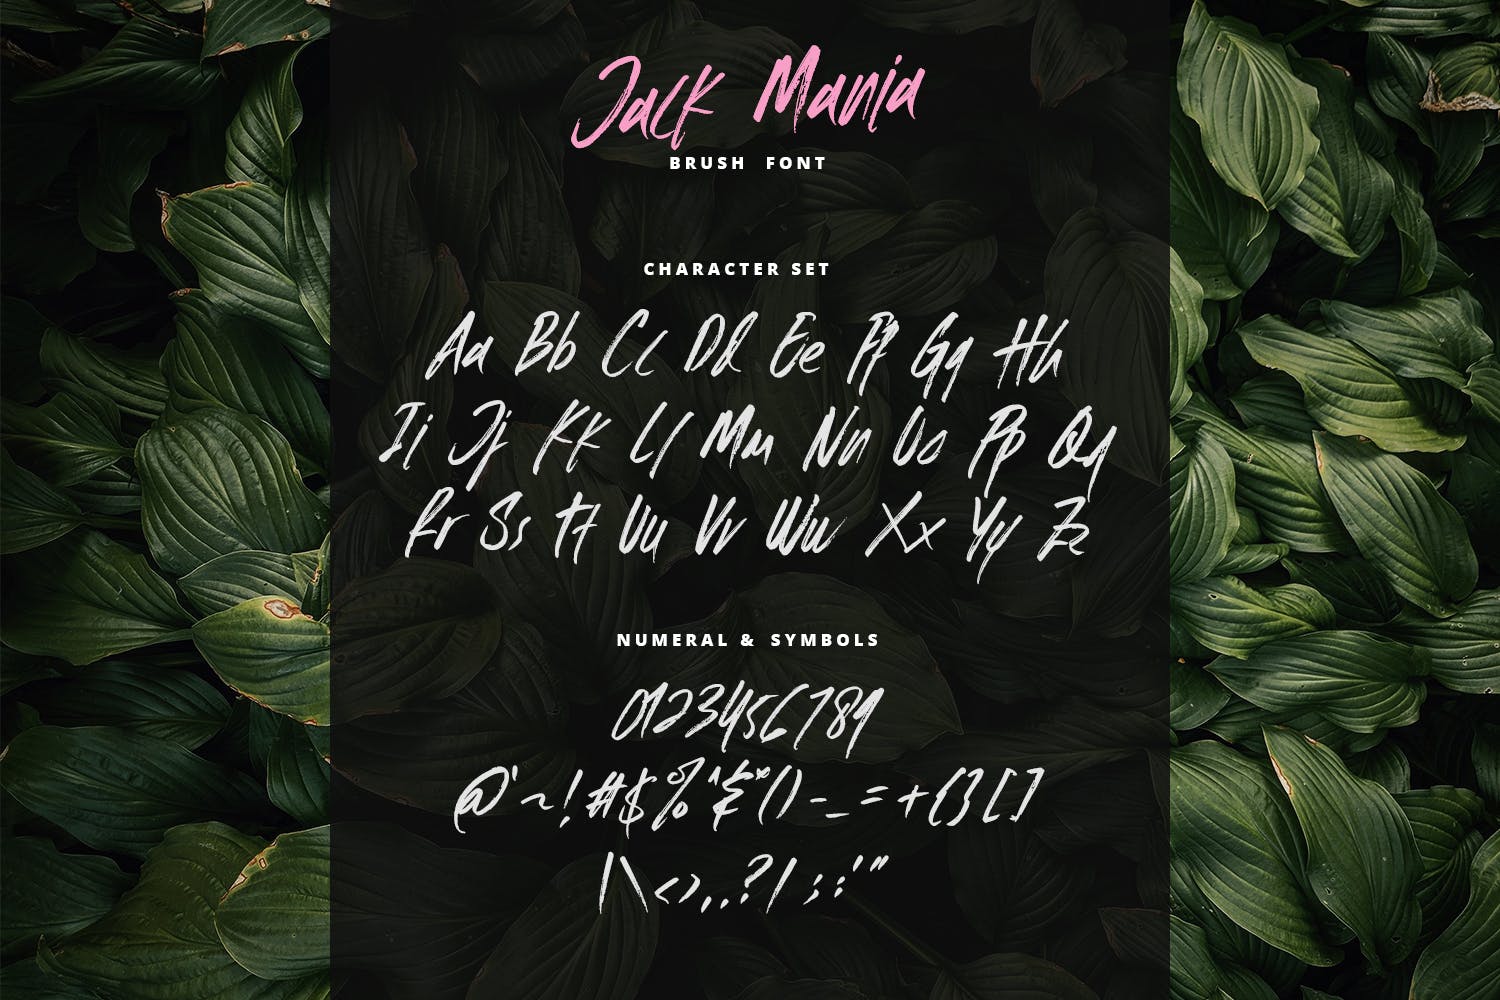 手工绘制英文画笔笔刷书法字体 The JACK MANIA Brush Font插图6